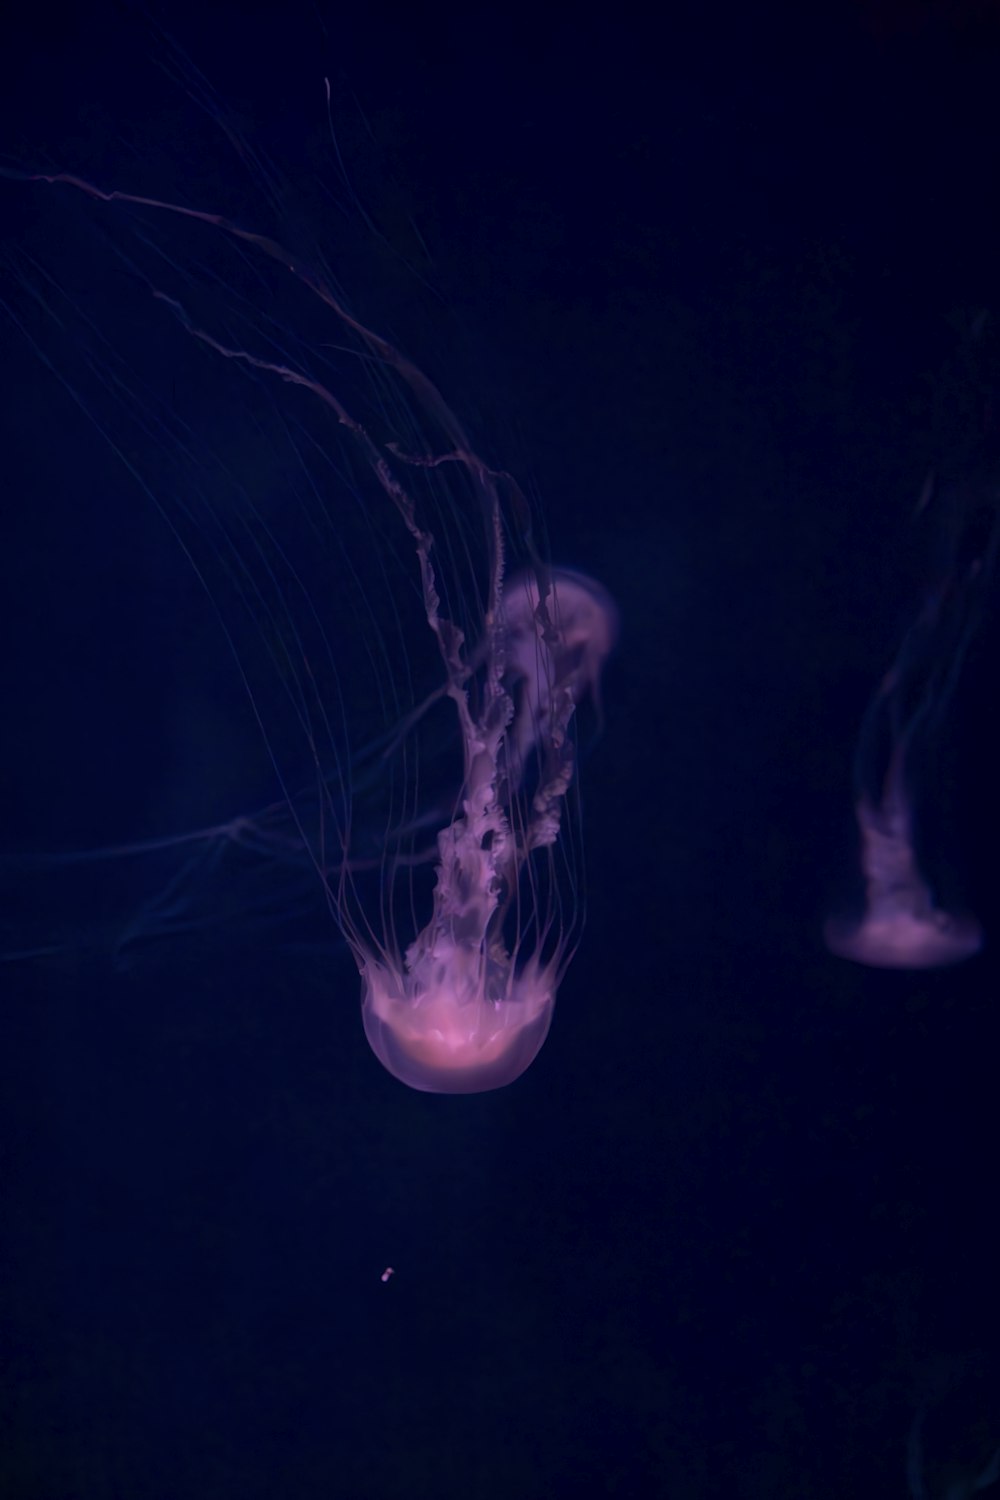 Un grupo de medusas flotando en el agua oscura